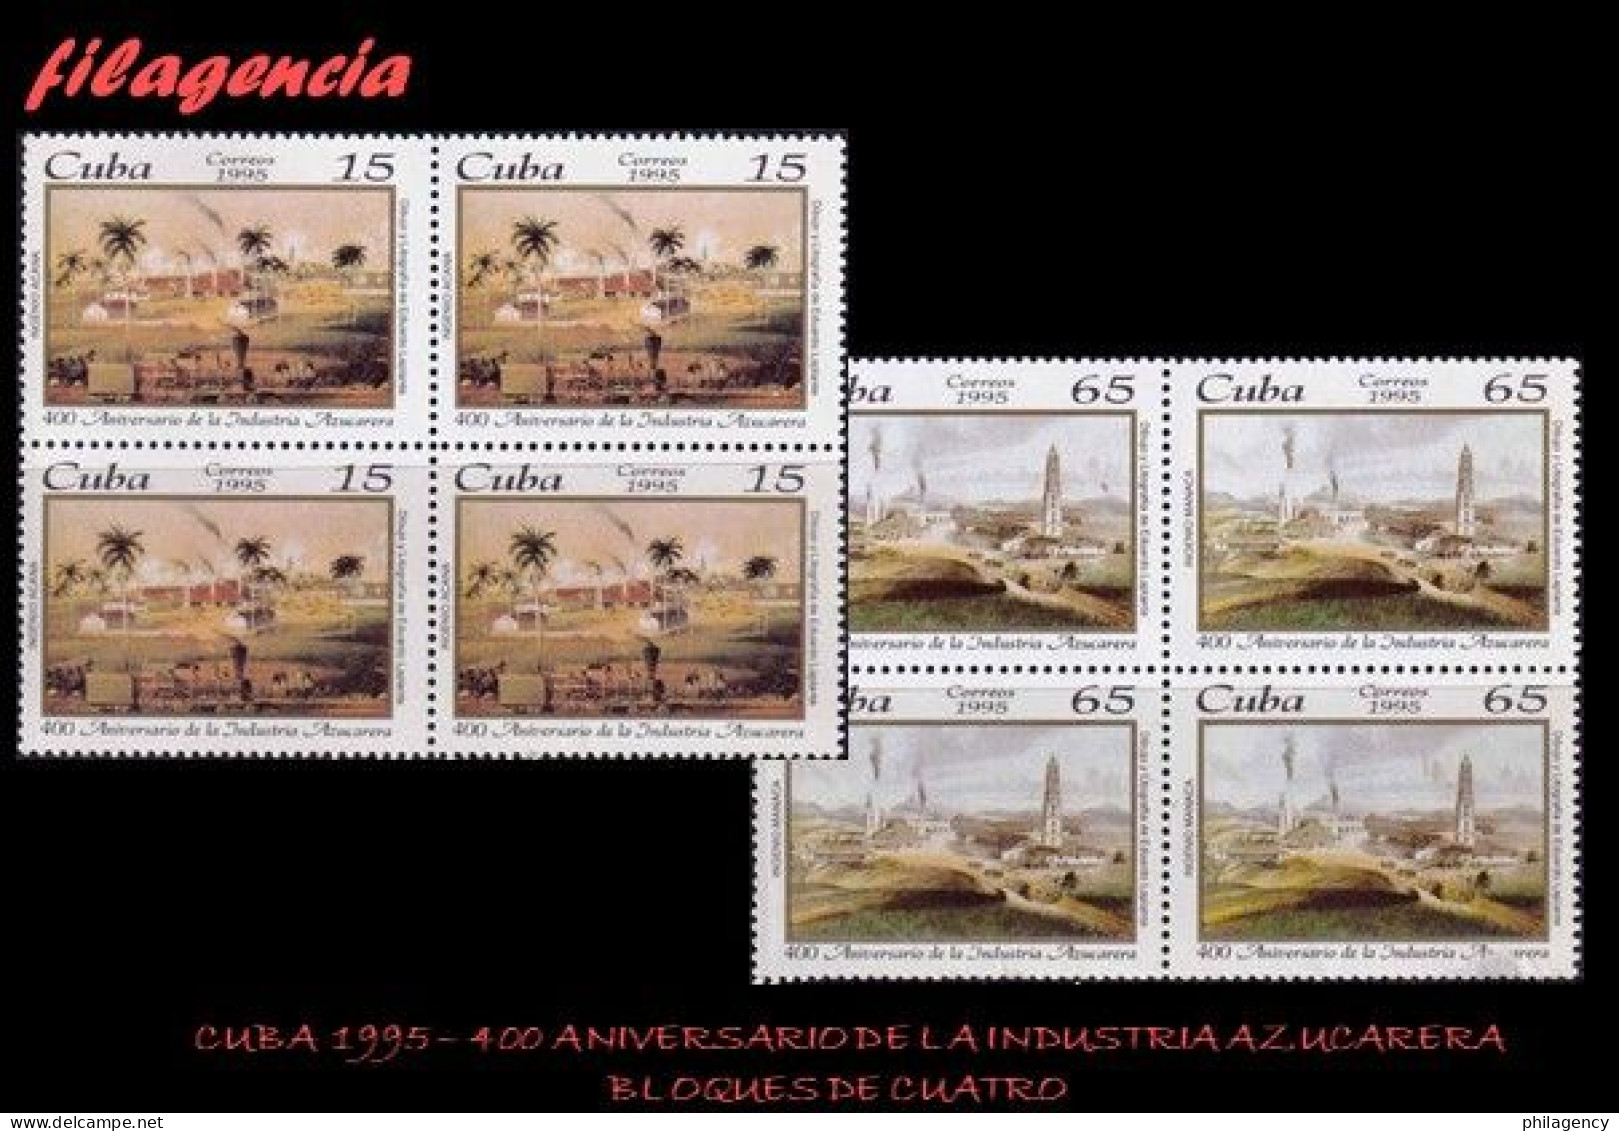 CUBA. BLOQUES DE CUATRO. 1995-15 IV CENTENARIO DE LA INDUSTRIA AZUCARERA EN CUBA - Ungebraucht